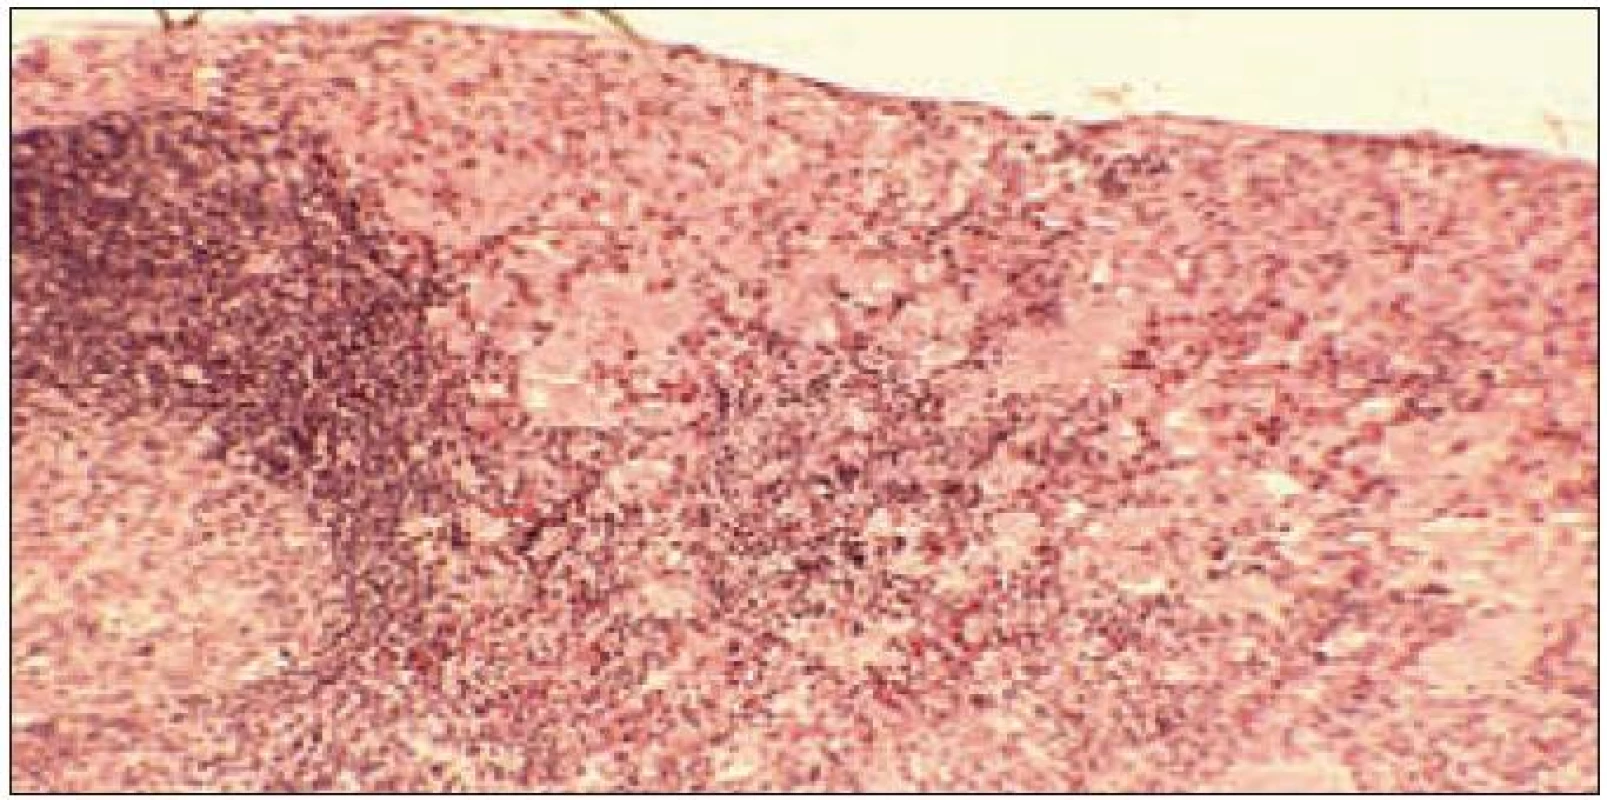 Lymfatická uzlina se zachycenou korou a částí zárodečného centra lymfatického folikulu (vlevo) je v periferním splavu a v koře infiltrována souvislou monomorfní infiltrací Langerhansovými histiocyty při geneneralizované multiorgánové formě LCH.